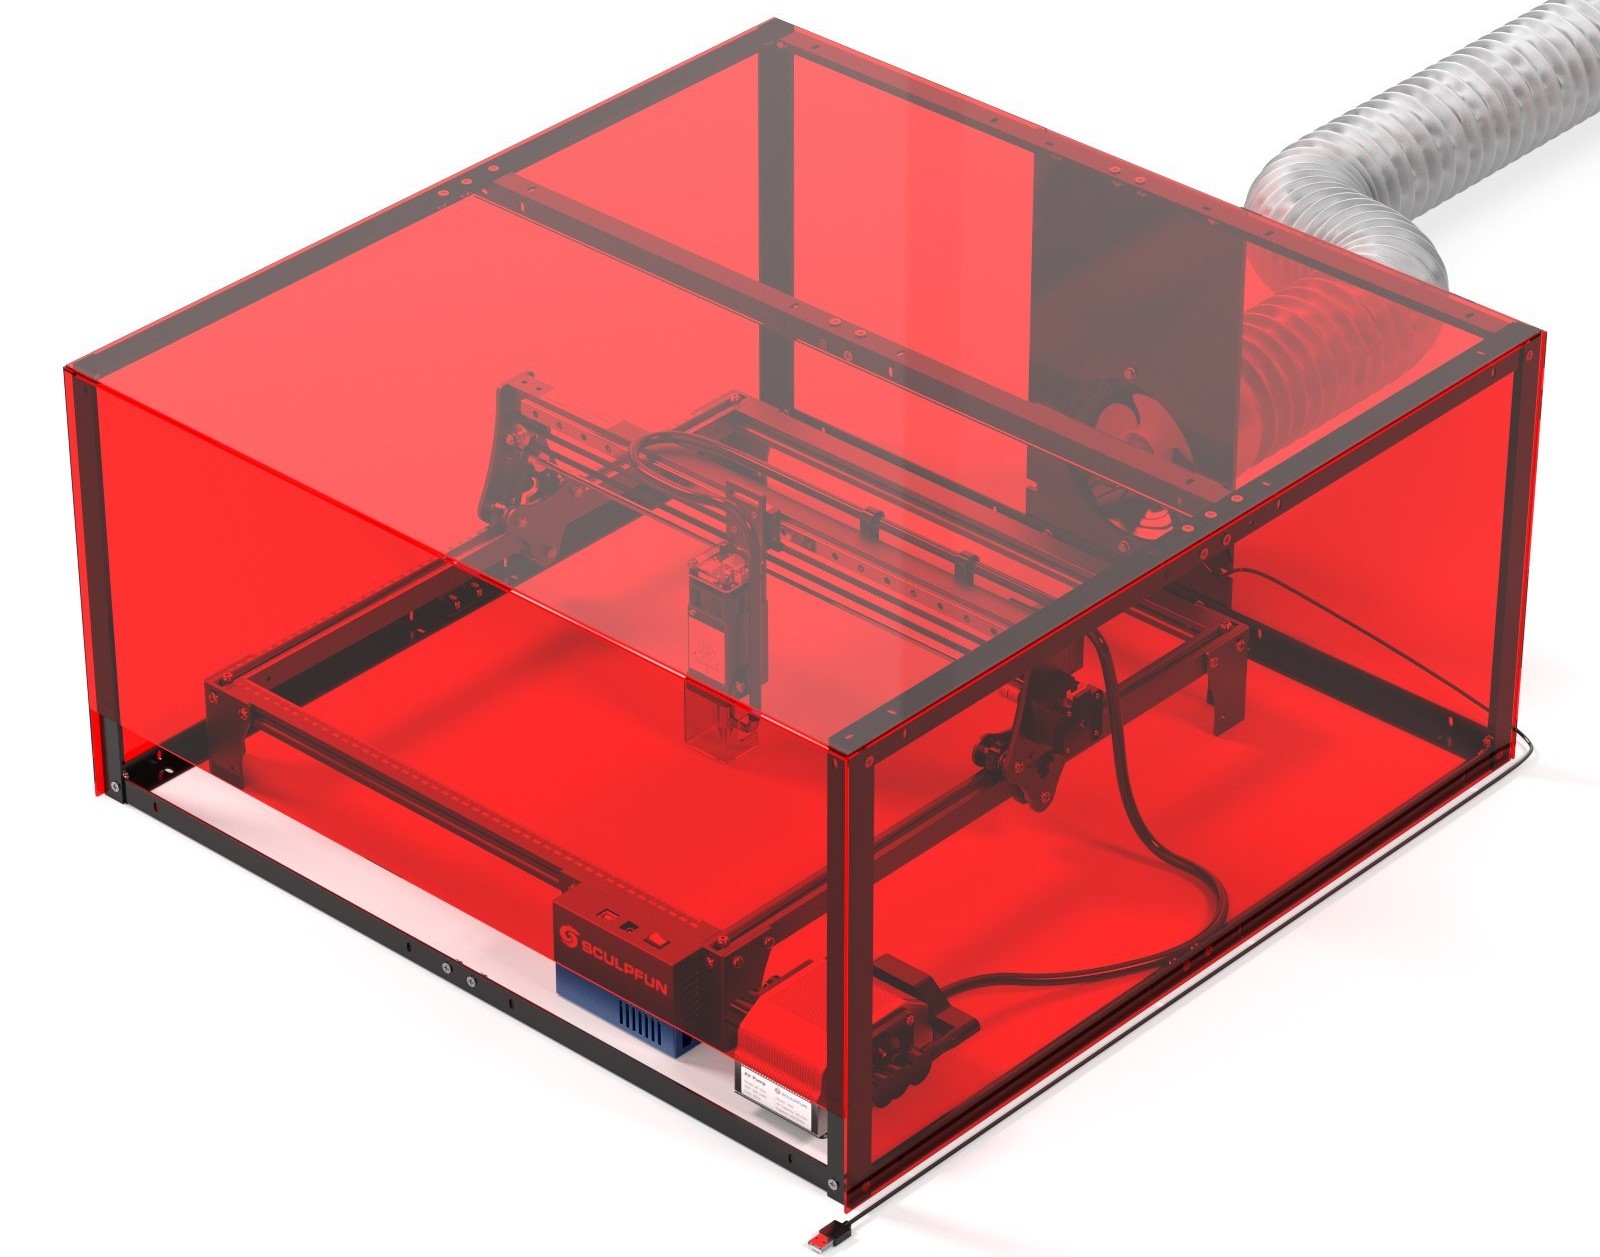 SCULPFUN Laser Engraving Protective Box Design